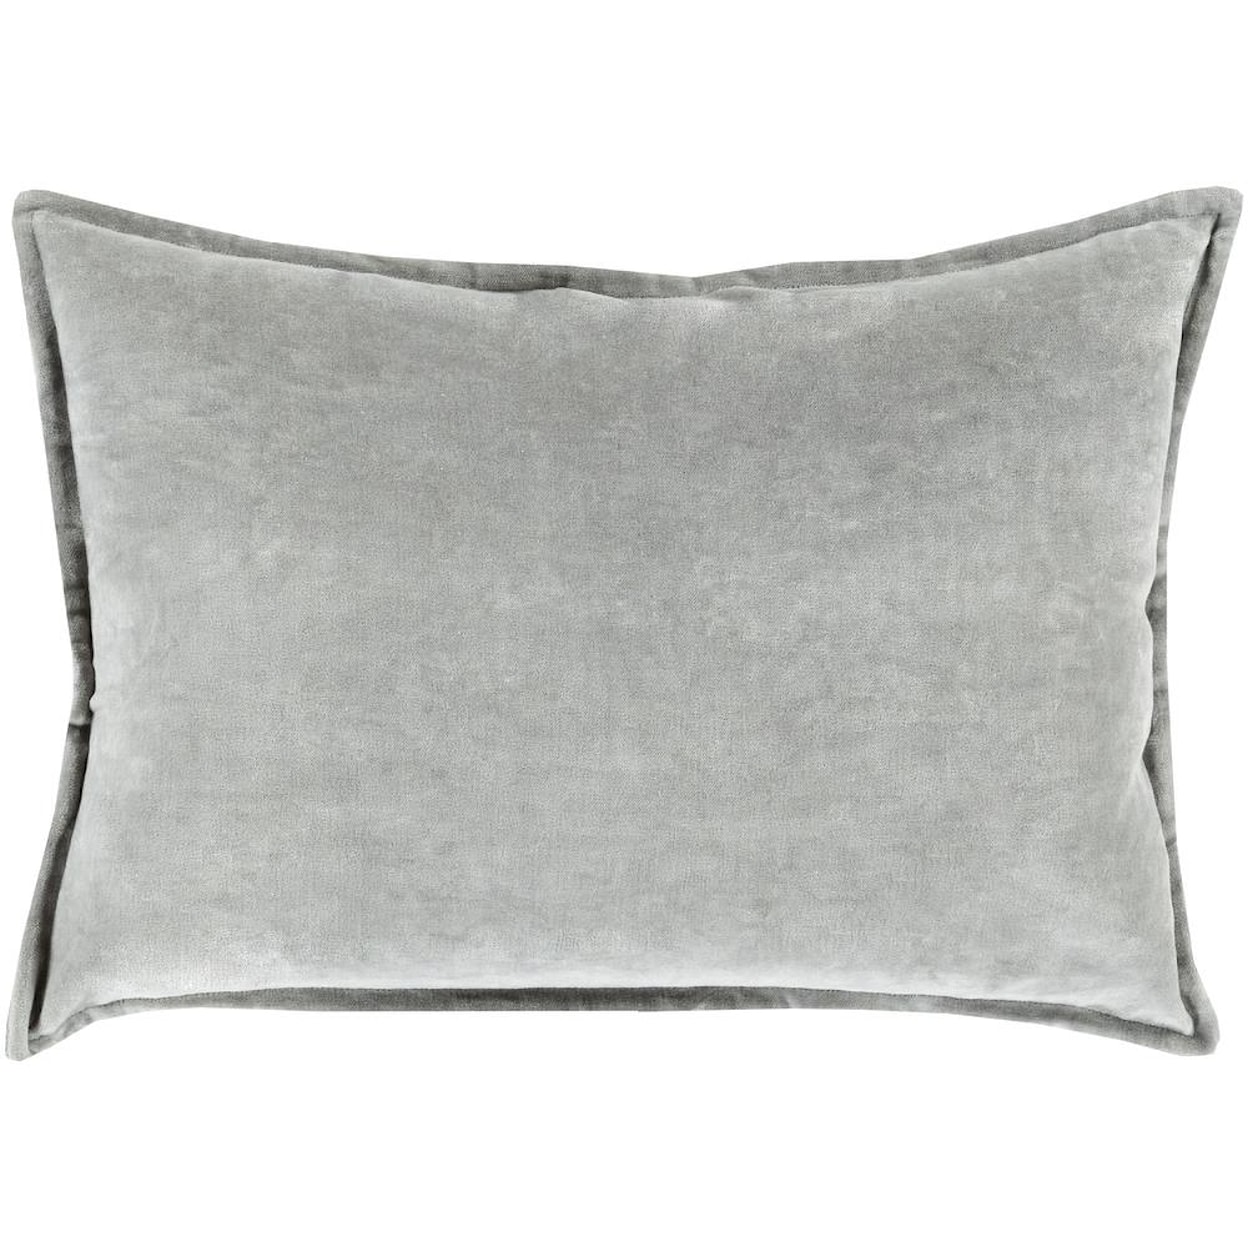 Surya Pillows 13" x 19" Decorative Pillow